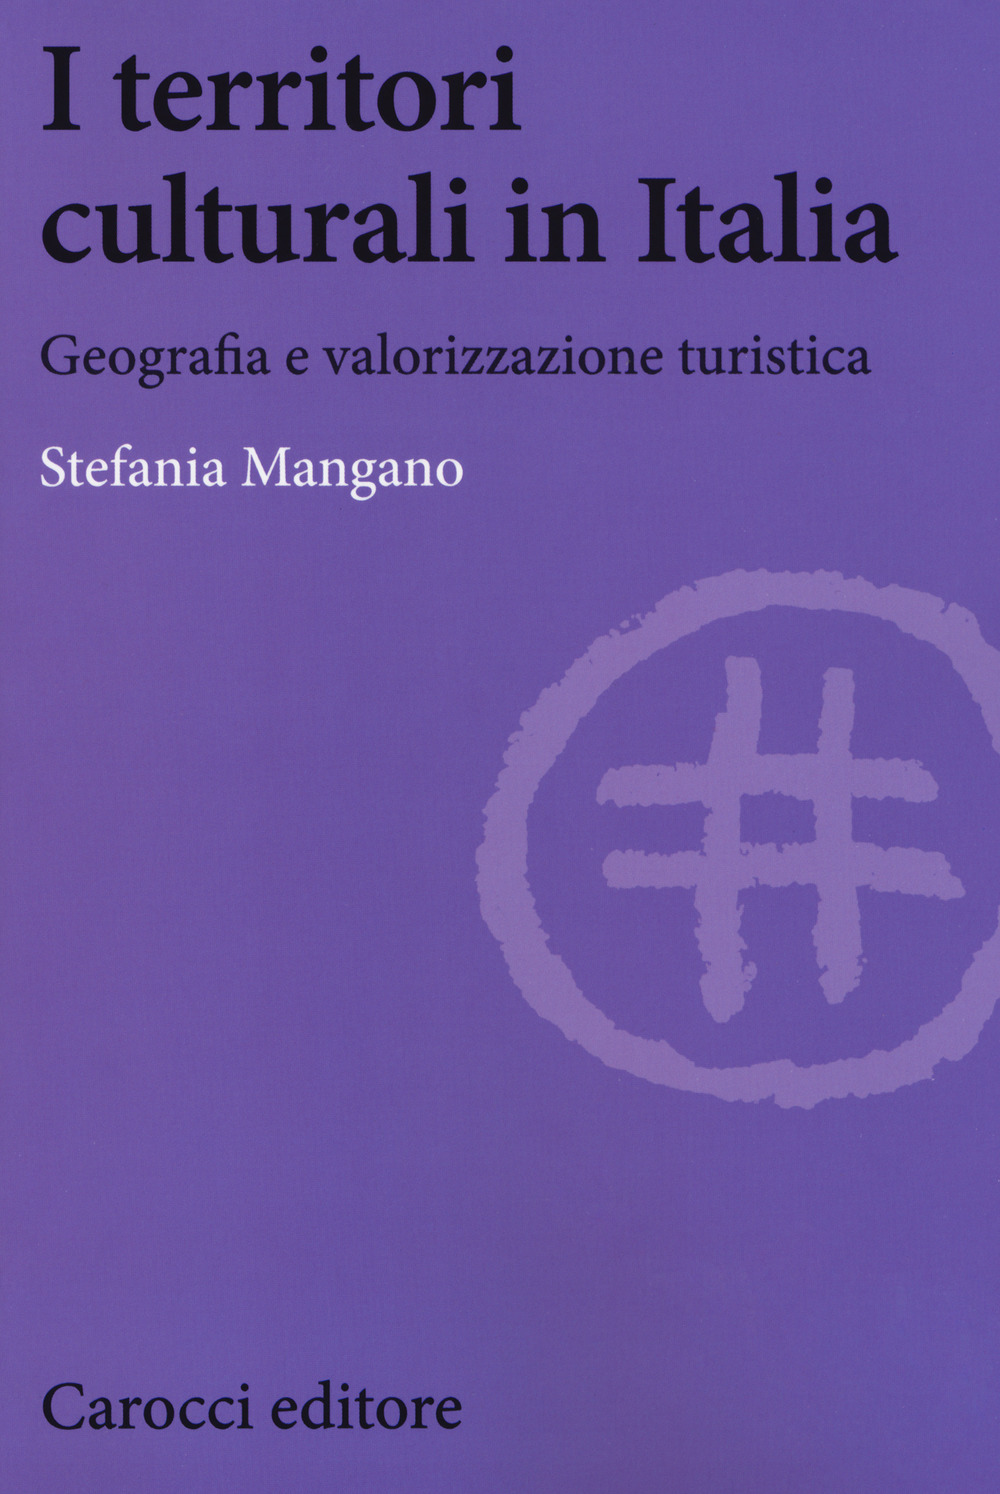 Image of I territori culturali in Italia. Geografia e valorizzazione turistica